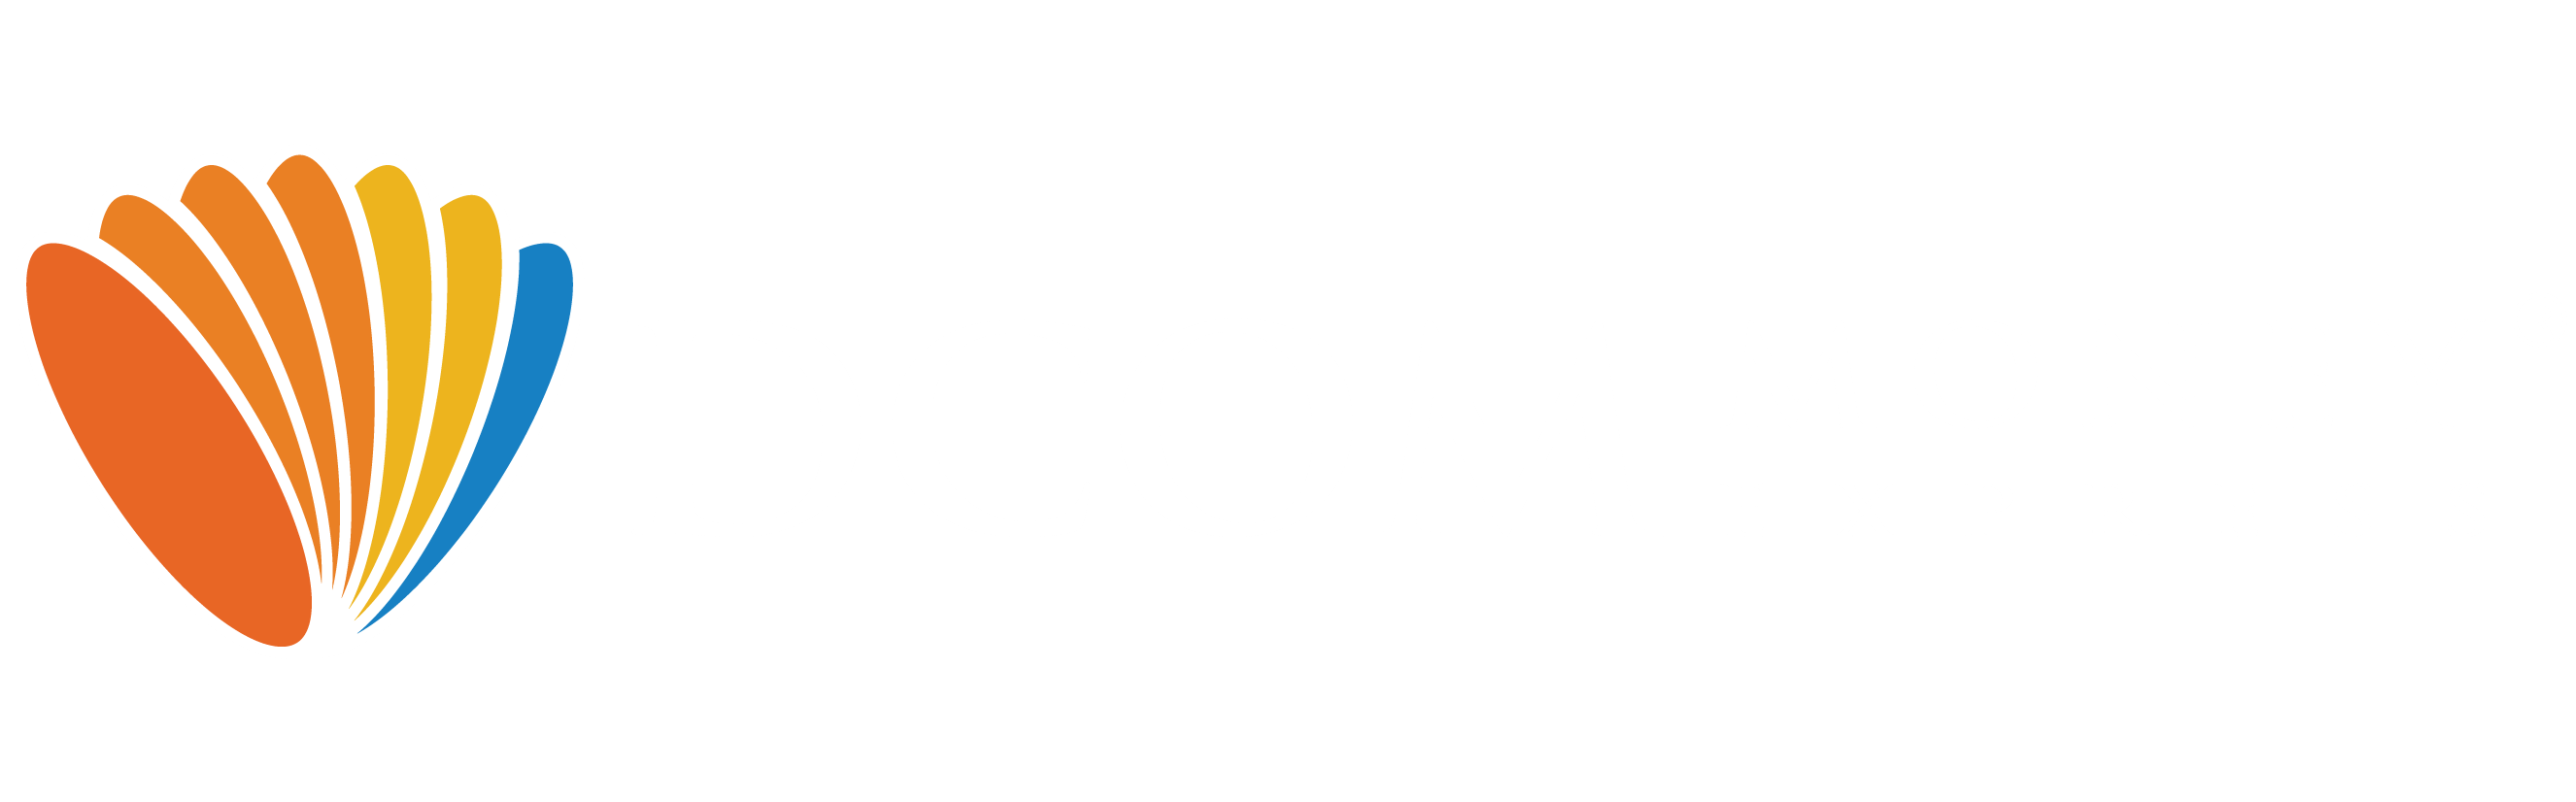 DCOM Money Express Logo